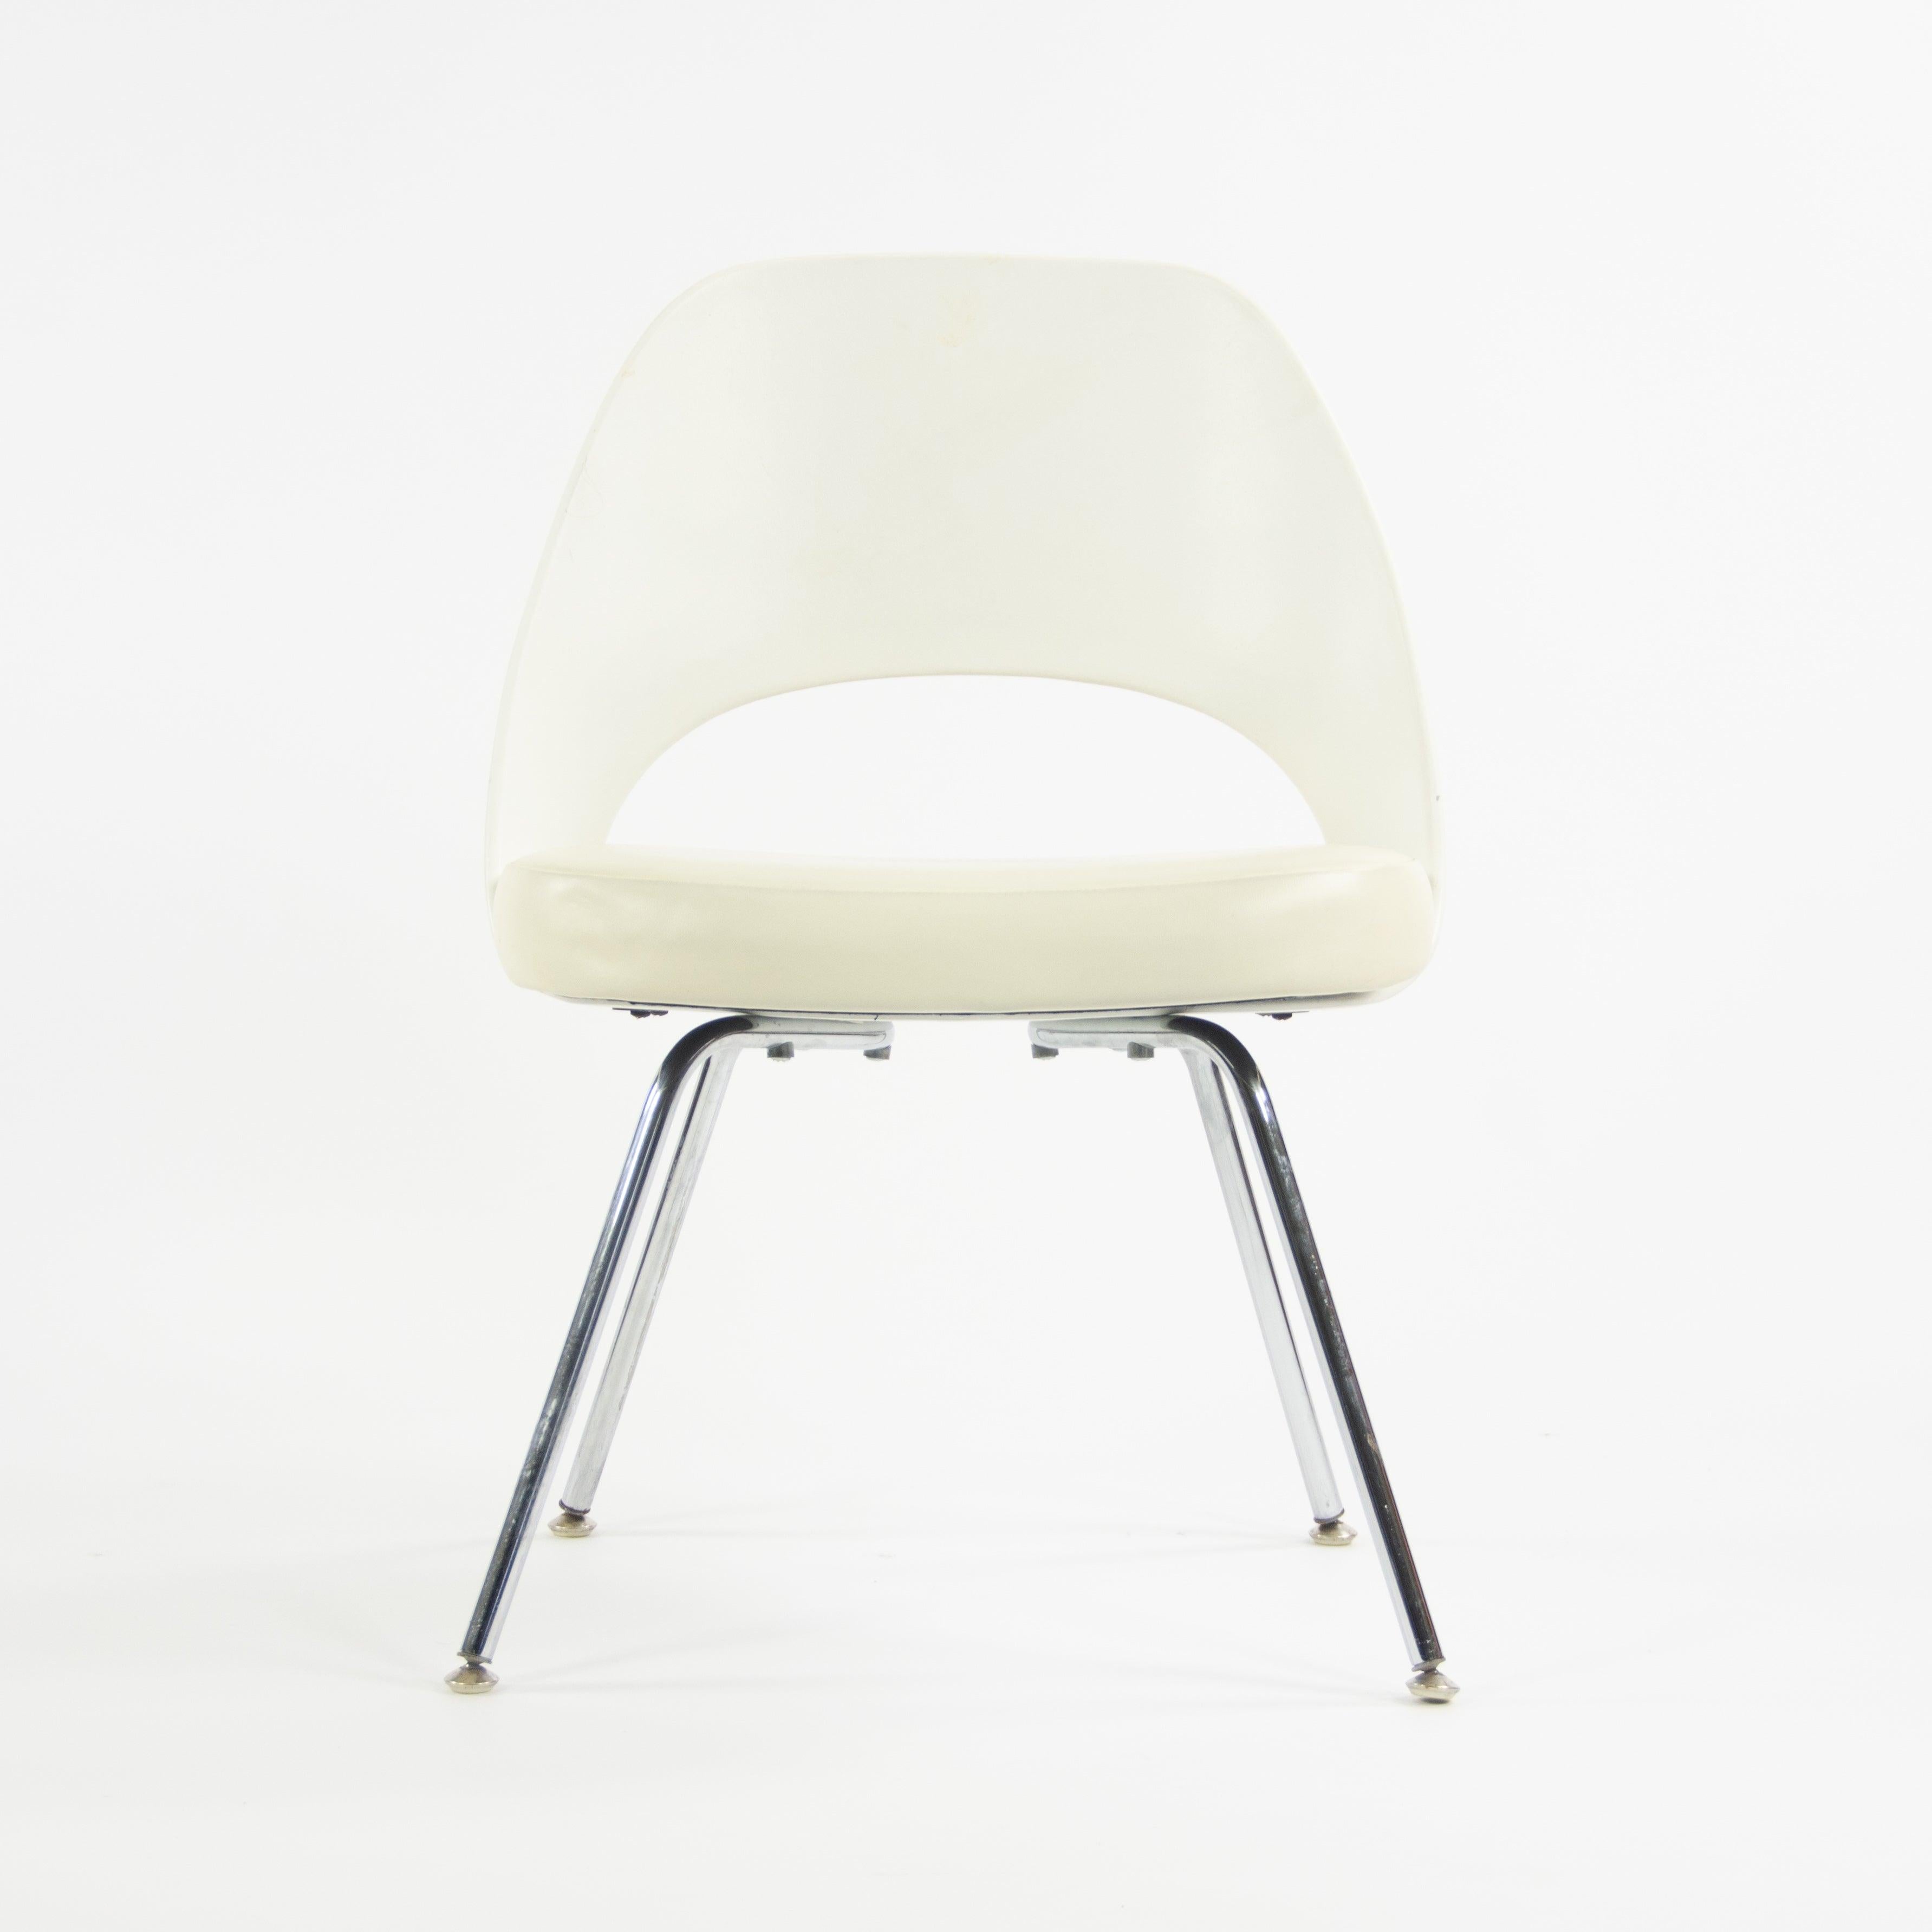 Whiting propose à la vente un superbe ensemble de chaises sans accoudoirs Eero Saarinen (vendues séparément), recouvertes de vinyle blanc et dotées de piétements chromés, produites par Knoll. Ces chaises ont des dossiers en plastique blanc, plutôt